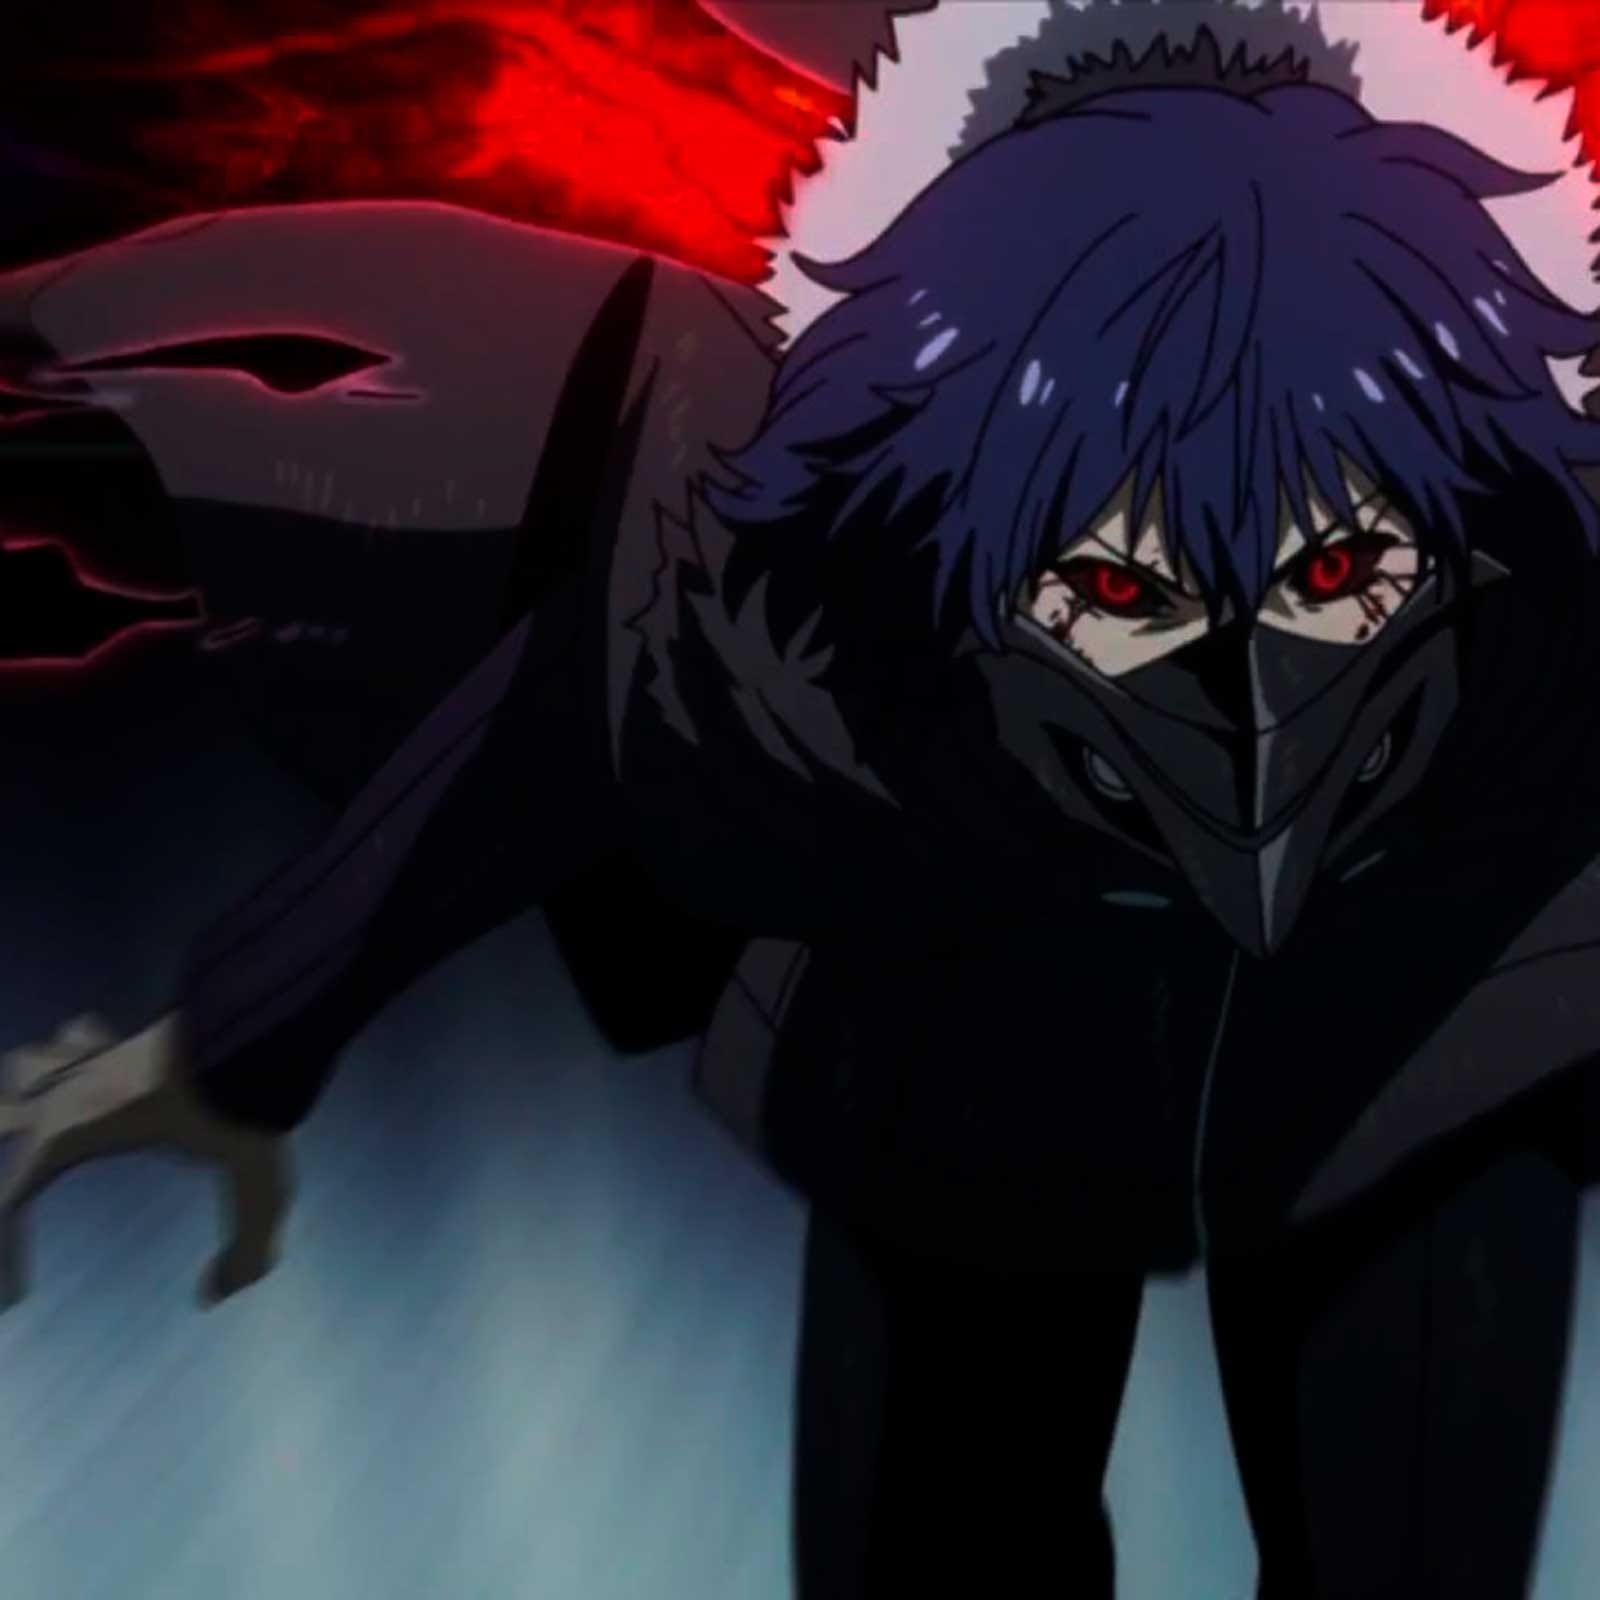 Суд запретил ссылки на ещё три аниме: «Загадка дьявола», «Класс убийц» и «Токийский гуль»